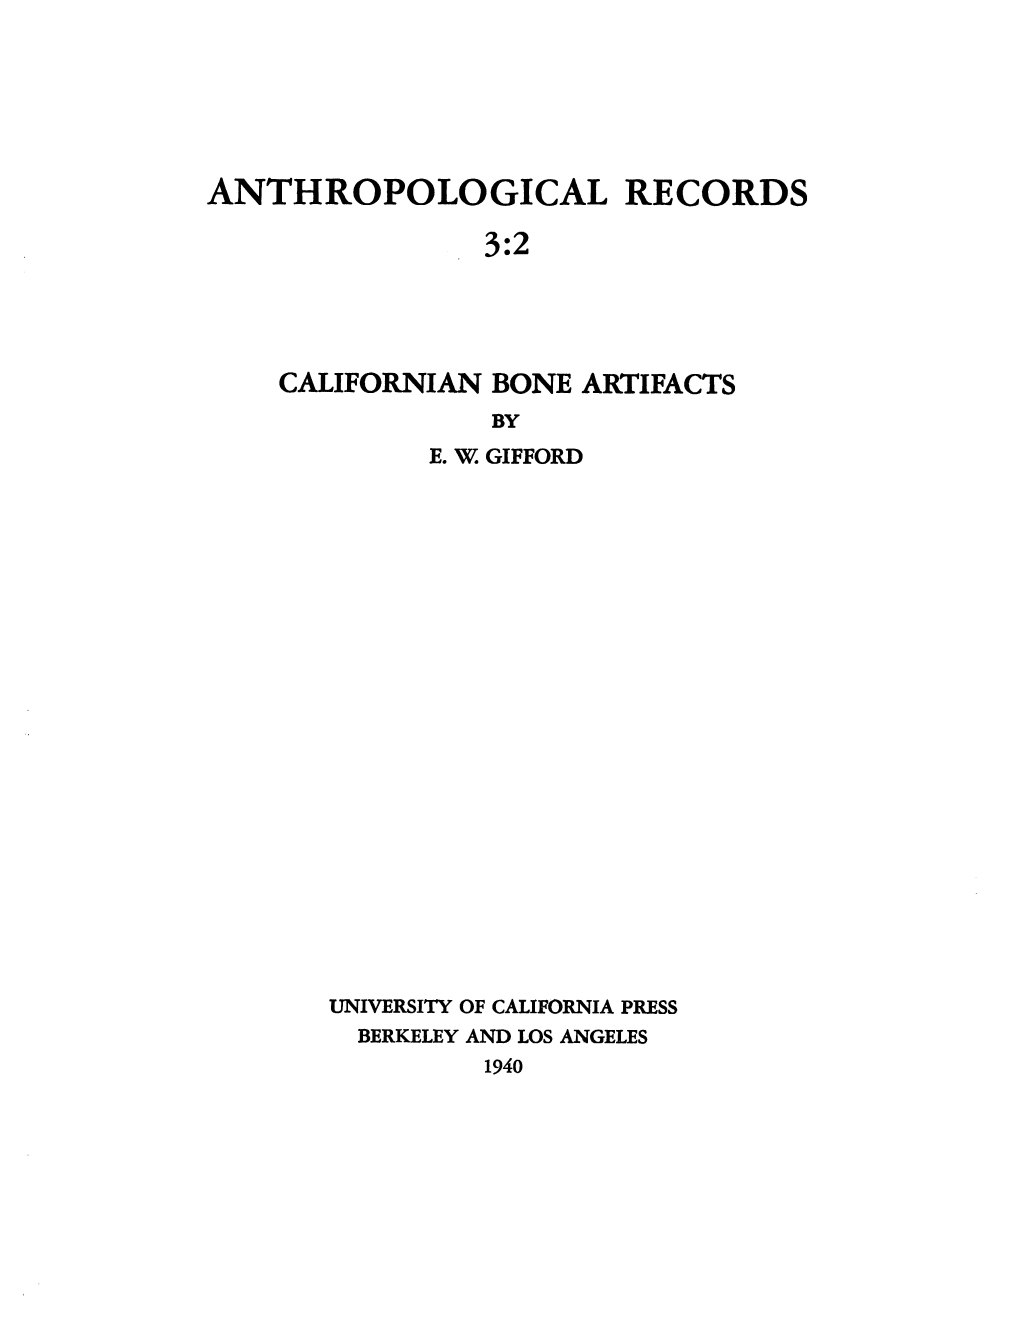 Californian Bone Artifacts